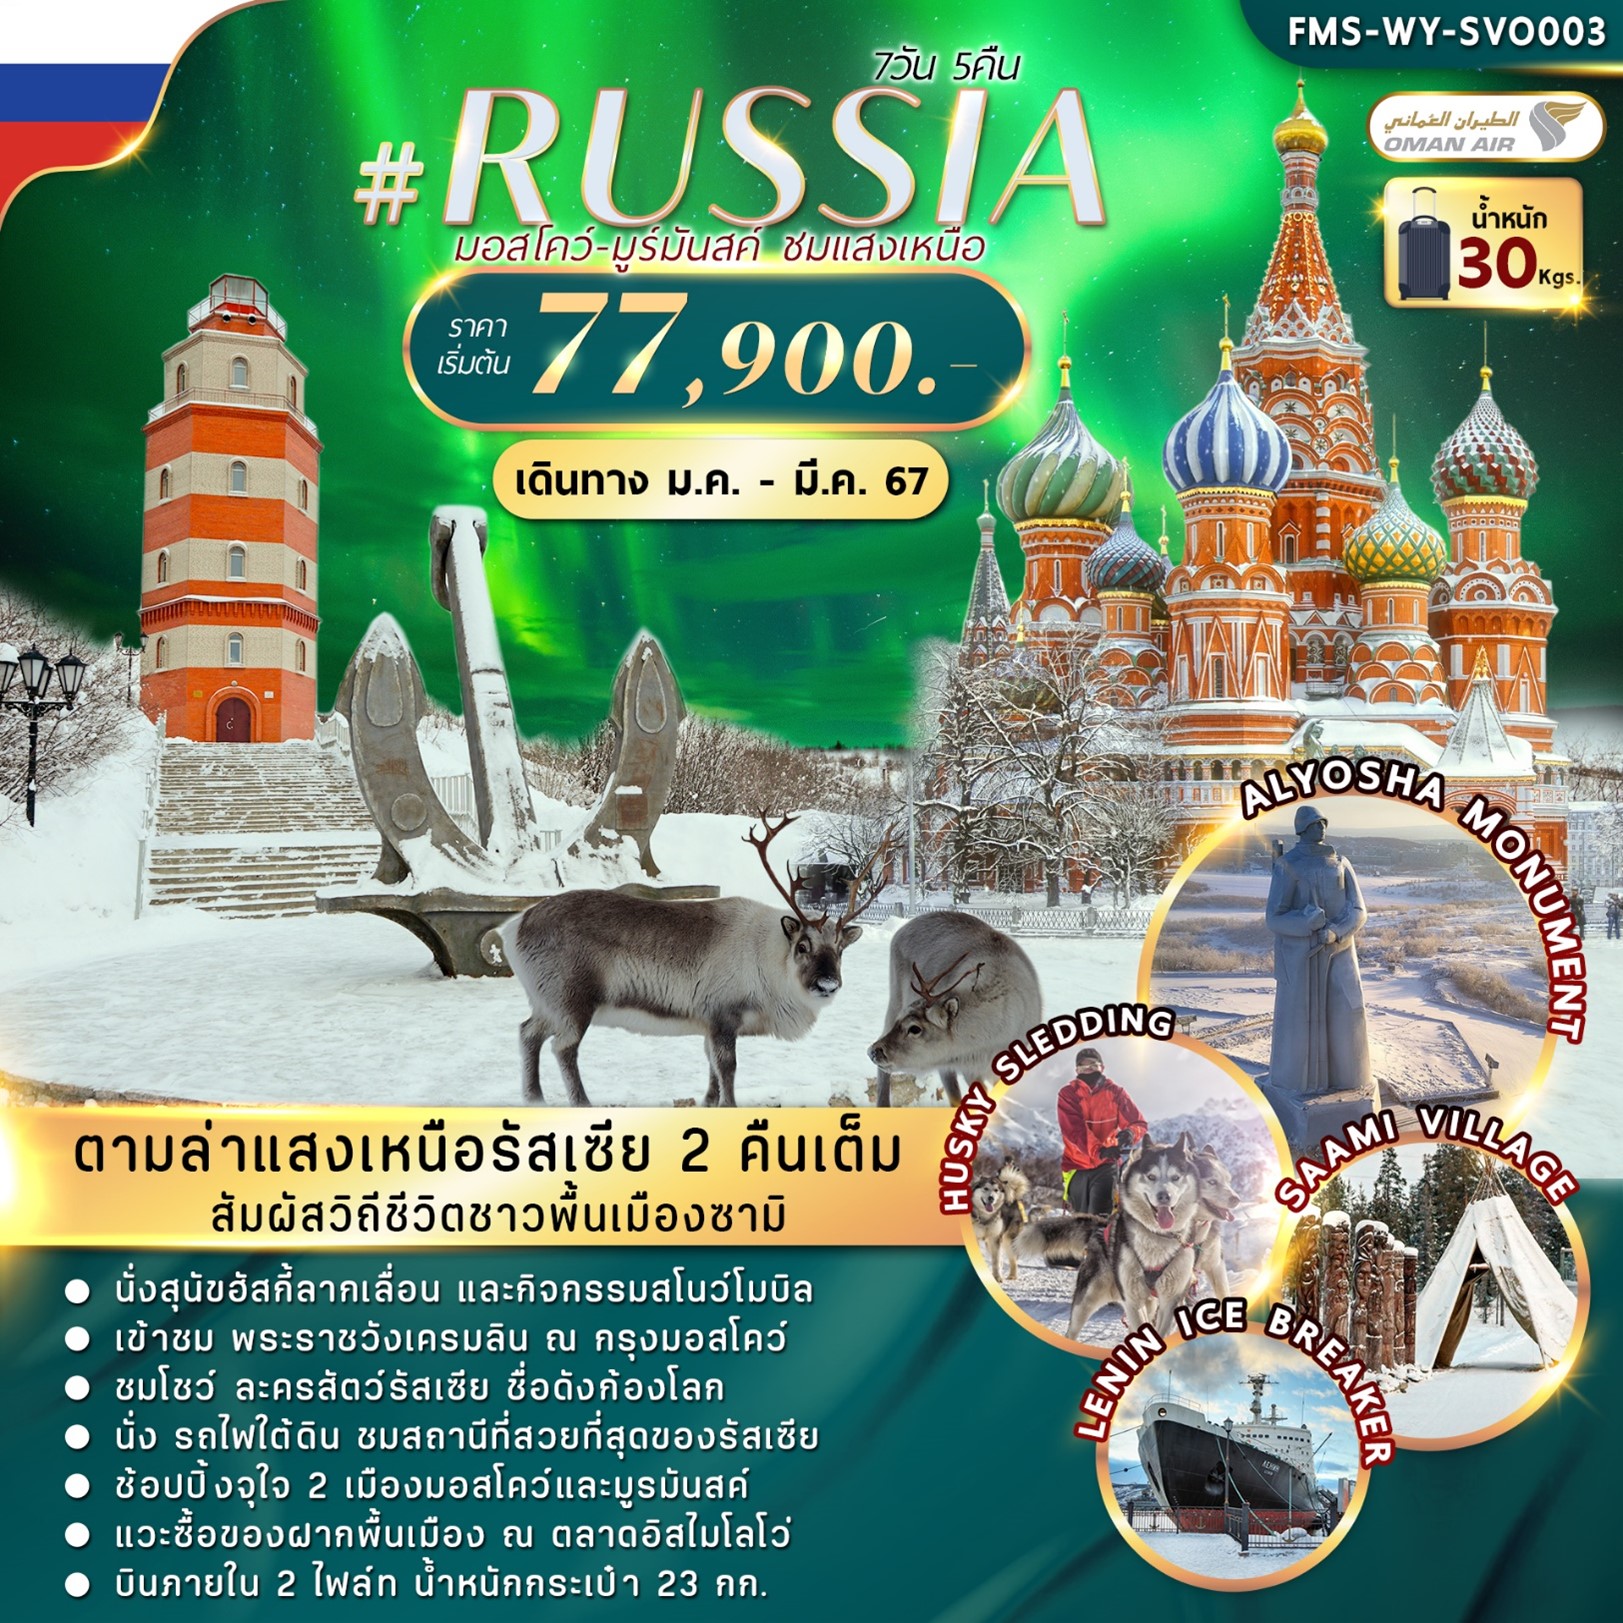 ทัวร์รัสเซีย มอสโคว์-มูร์มันสค์ ชมแสงเหนือ 7 วัน 5 คืน